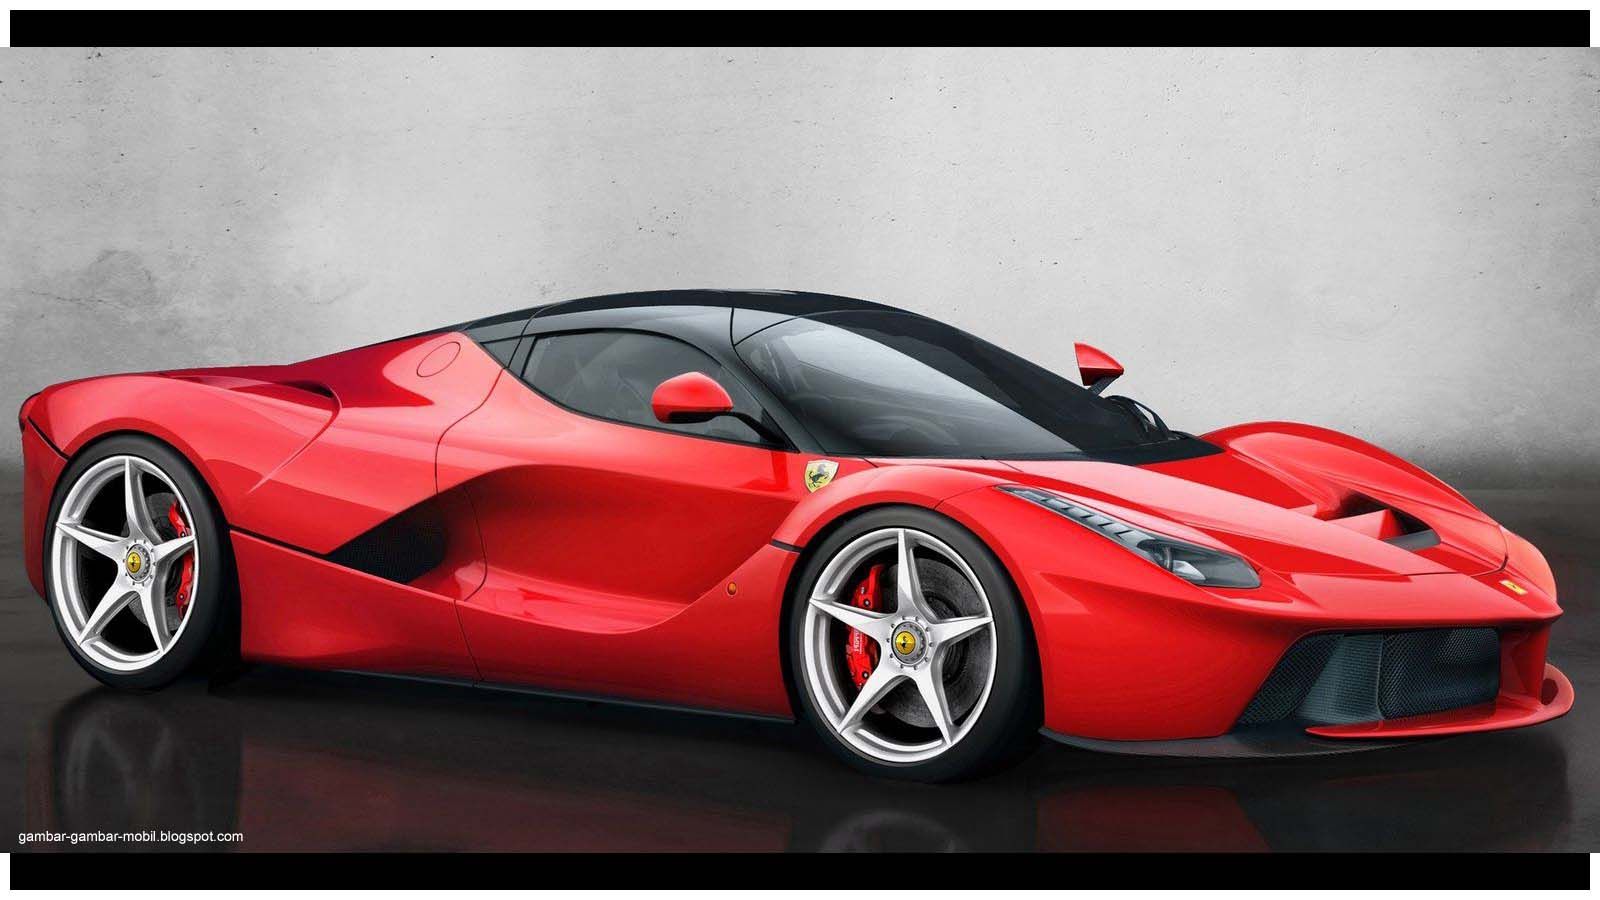 Foto Mobil Sedan Ferrari Modifikasi Mobil